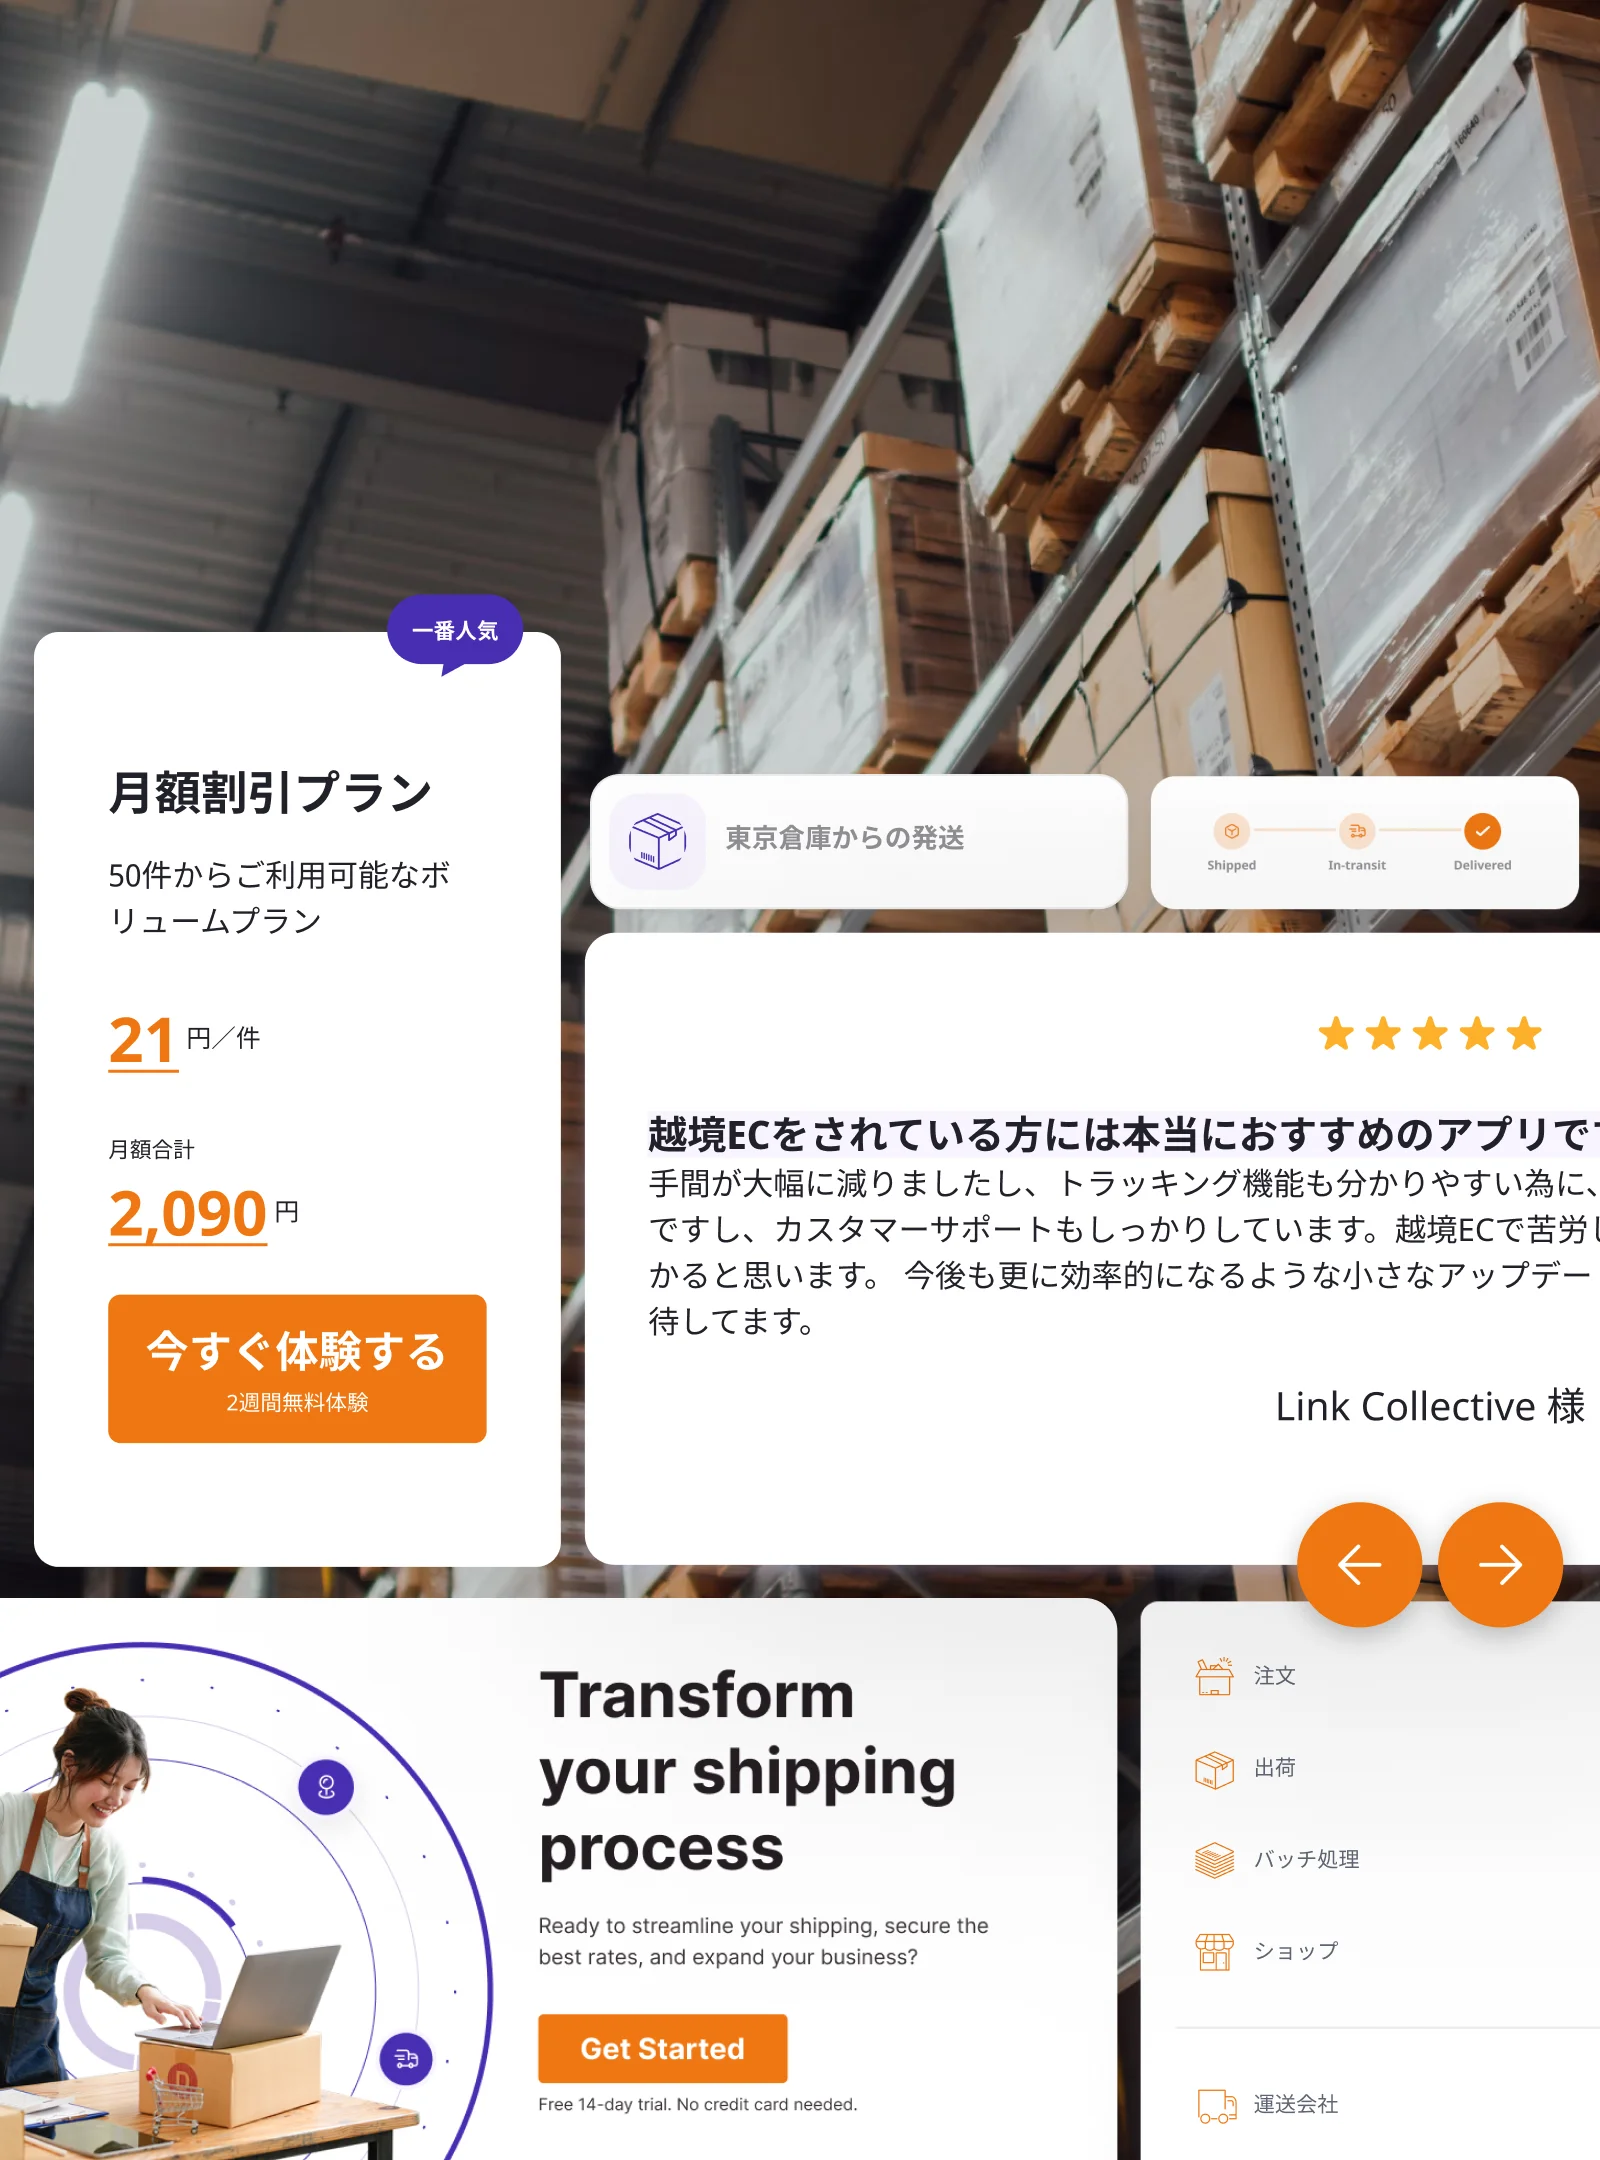 Website elements on Alishan Park Cafe Tokyo